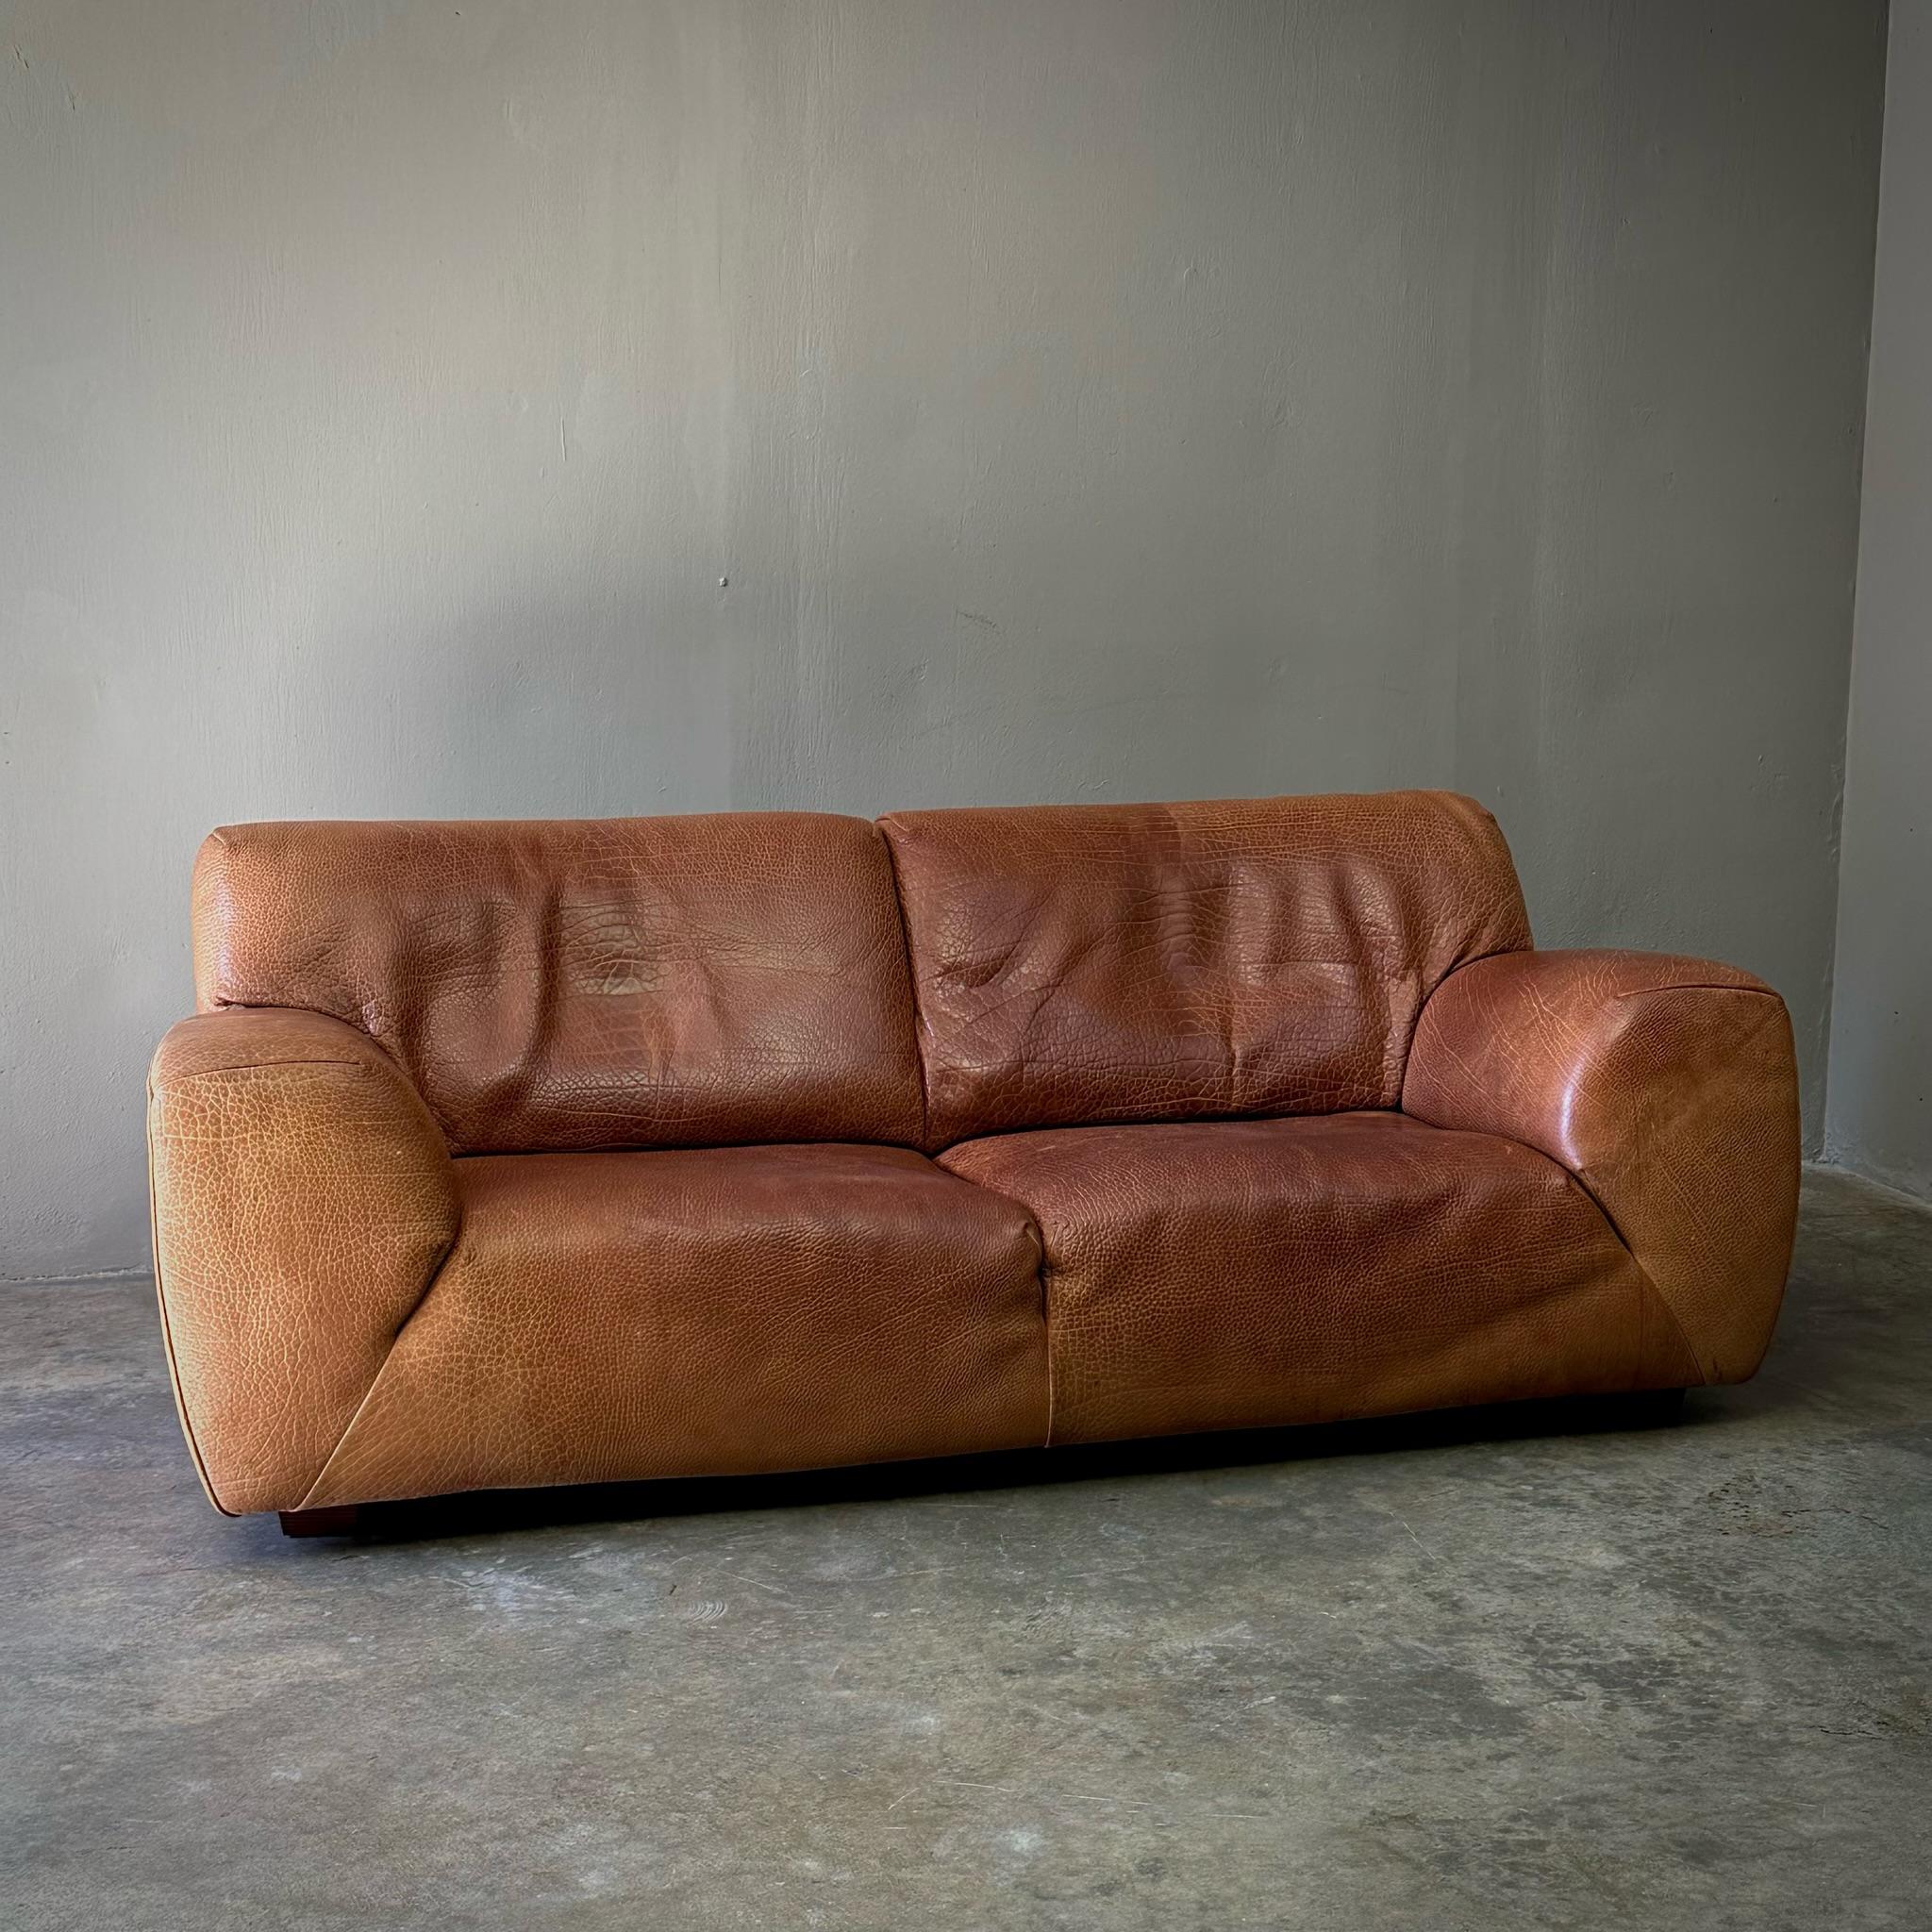 Late 20th Century Leather Molinari Sofa